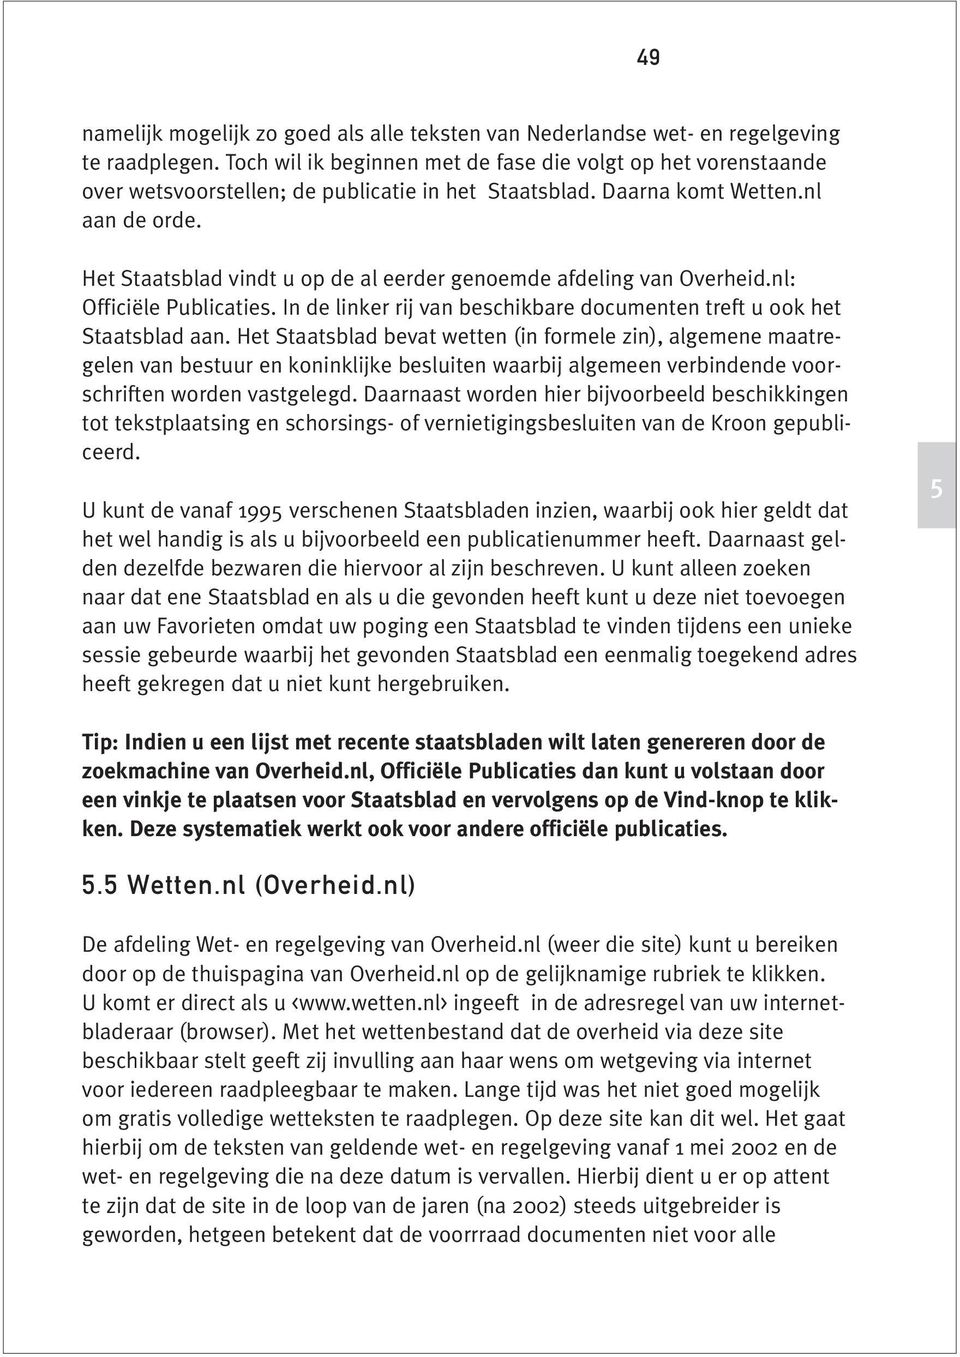 Het Staatsblad vindt u op de al eerder genoemde afdeling van Overheid.nl: Officiële Publicaties. In de linker rij van beschikbare documenten treft u ook het Staatsblad aan.